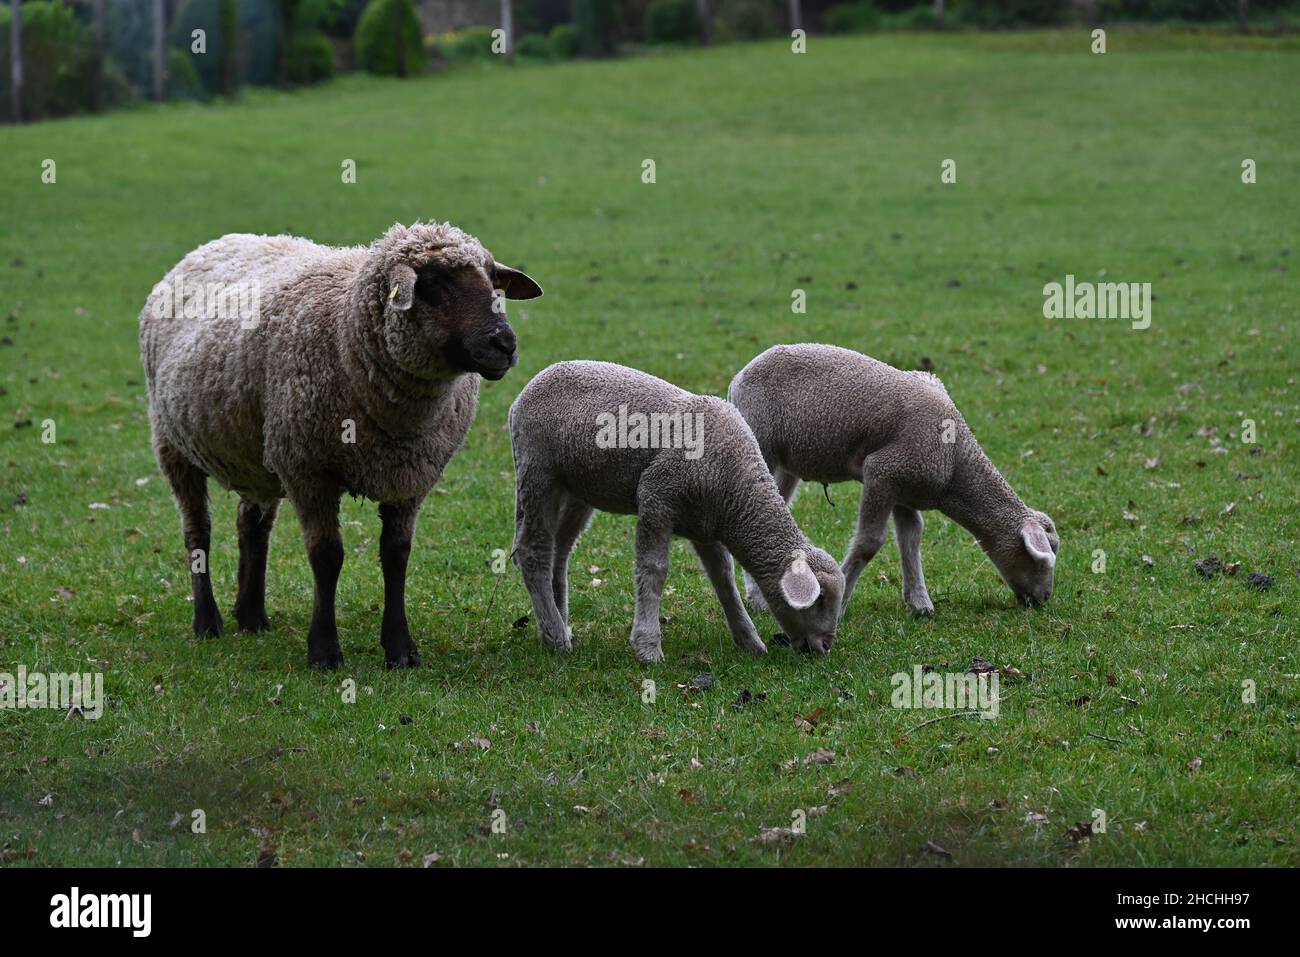 sheep family having dinner Stock Photo